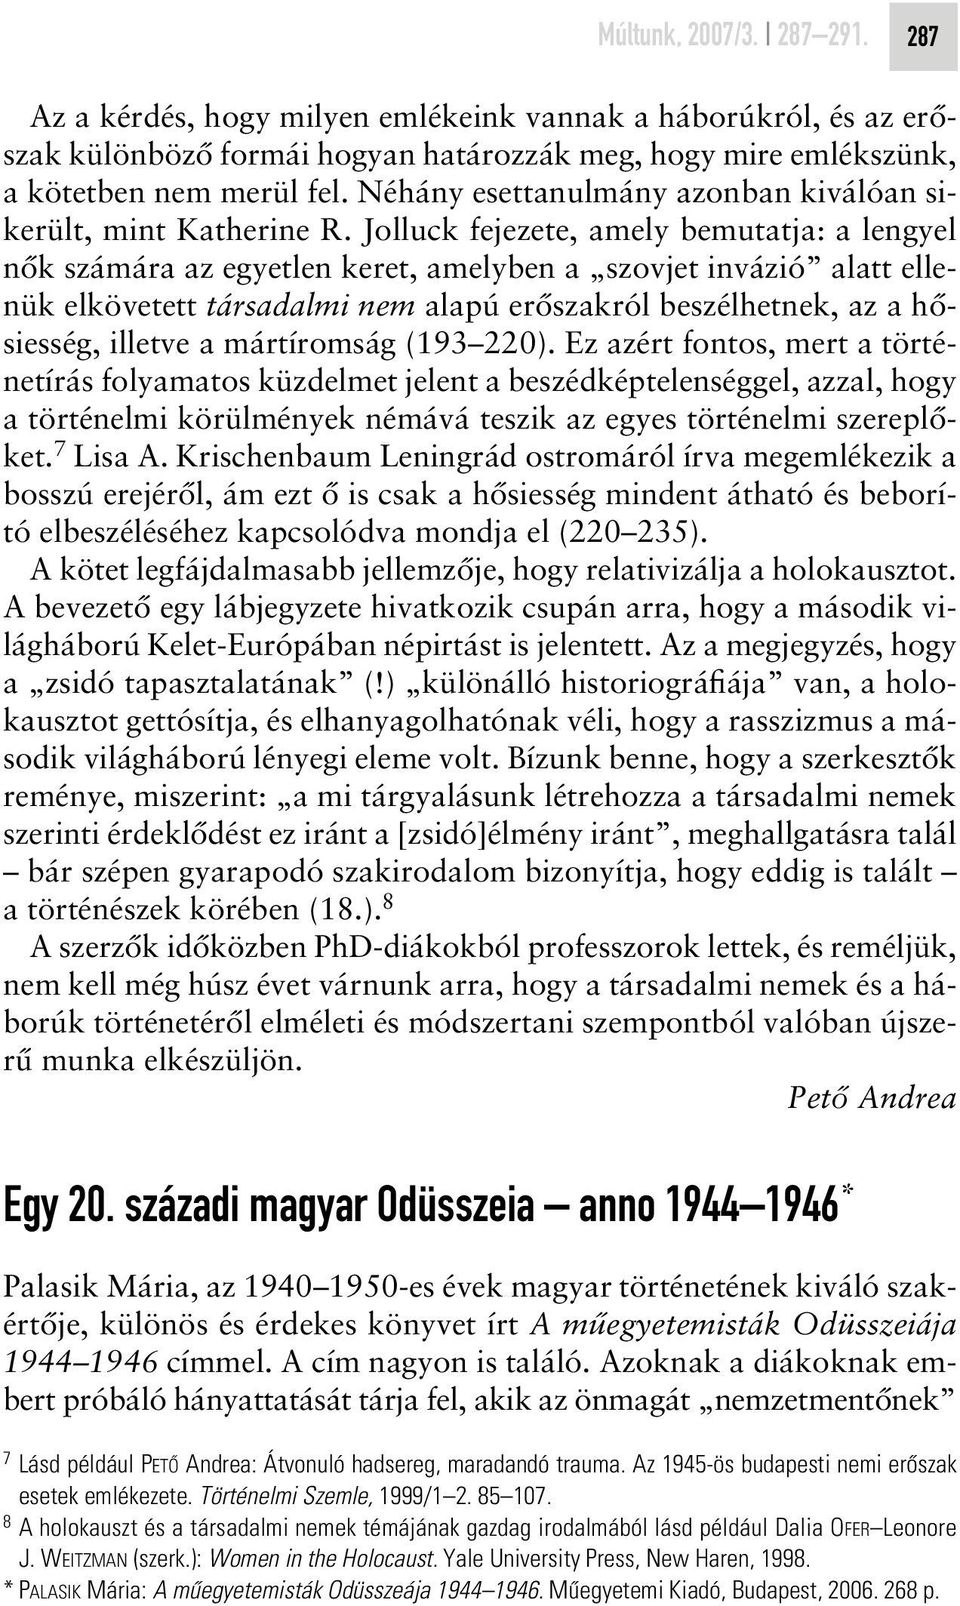 Jolluck fejezete, amely bemutatja: a lengyel nôk számára az egyetlen keret, amelyben a szovjet invázió alatt ellenük elkövetett társadalmi nem alapú erôszakról beszélhetnek, az a hôsiesség, illetve a